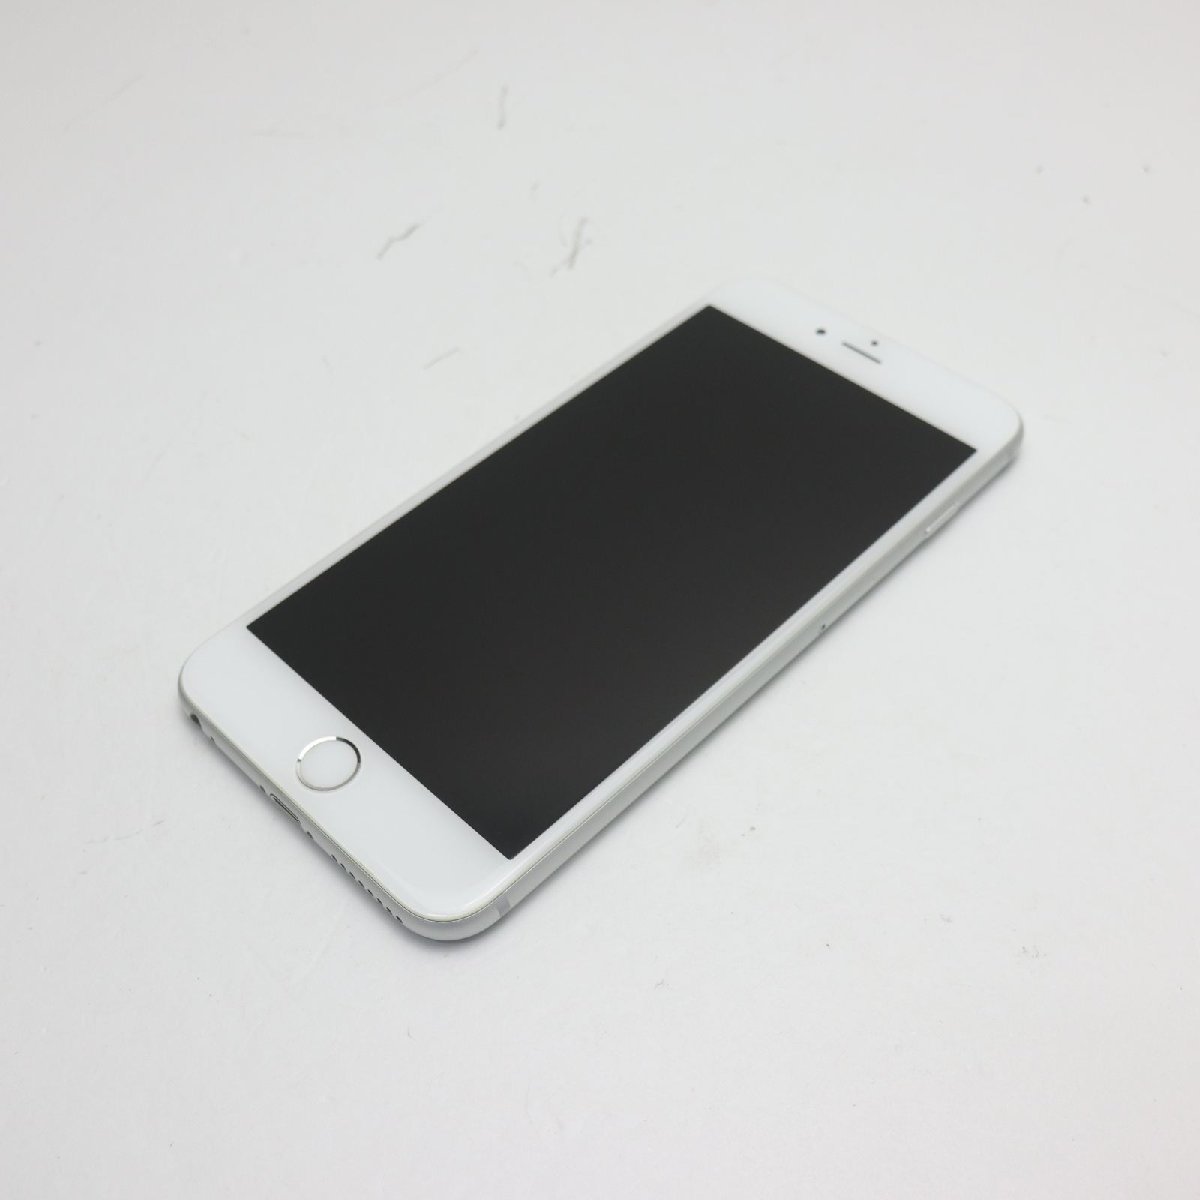 【中古】 超美品 SOFTBANK iPhone6 PLUS 64GB シルバー 安心保証 即日発送 スマホ Apple SOFTBANK 本体 白ロム あす楽 土日祝発送OK